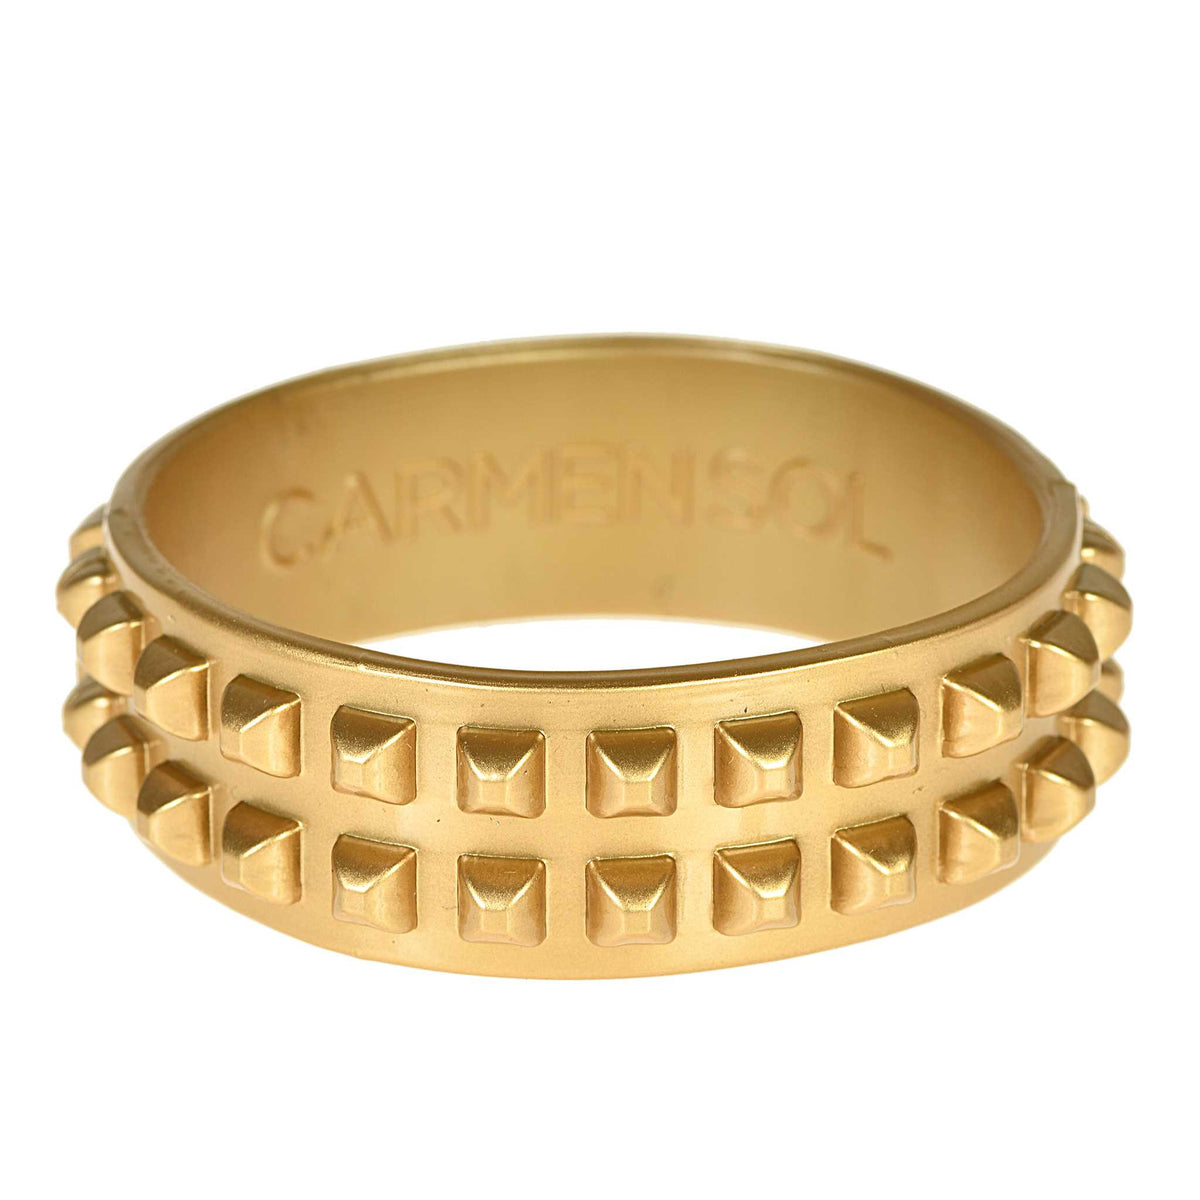 Womens gold bracelets in jelly